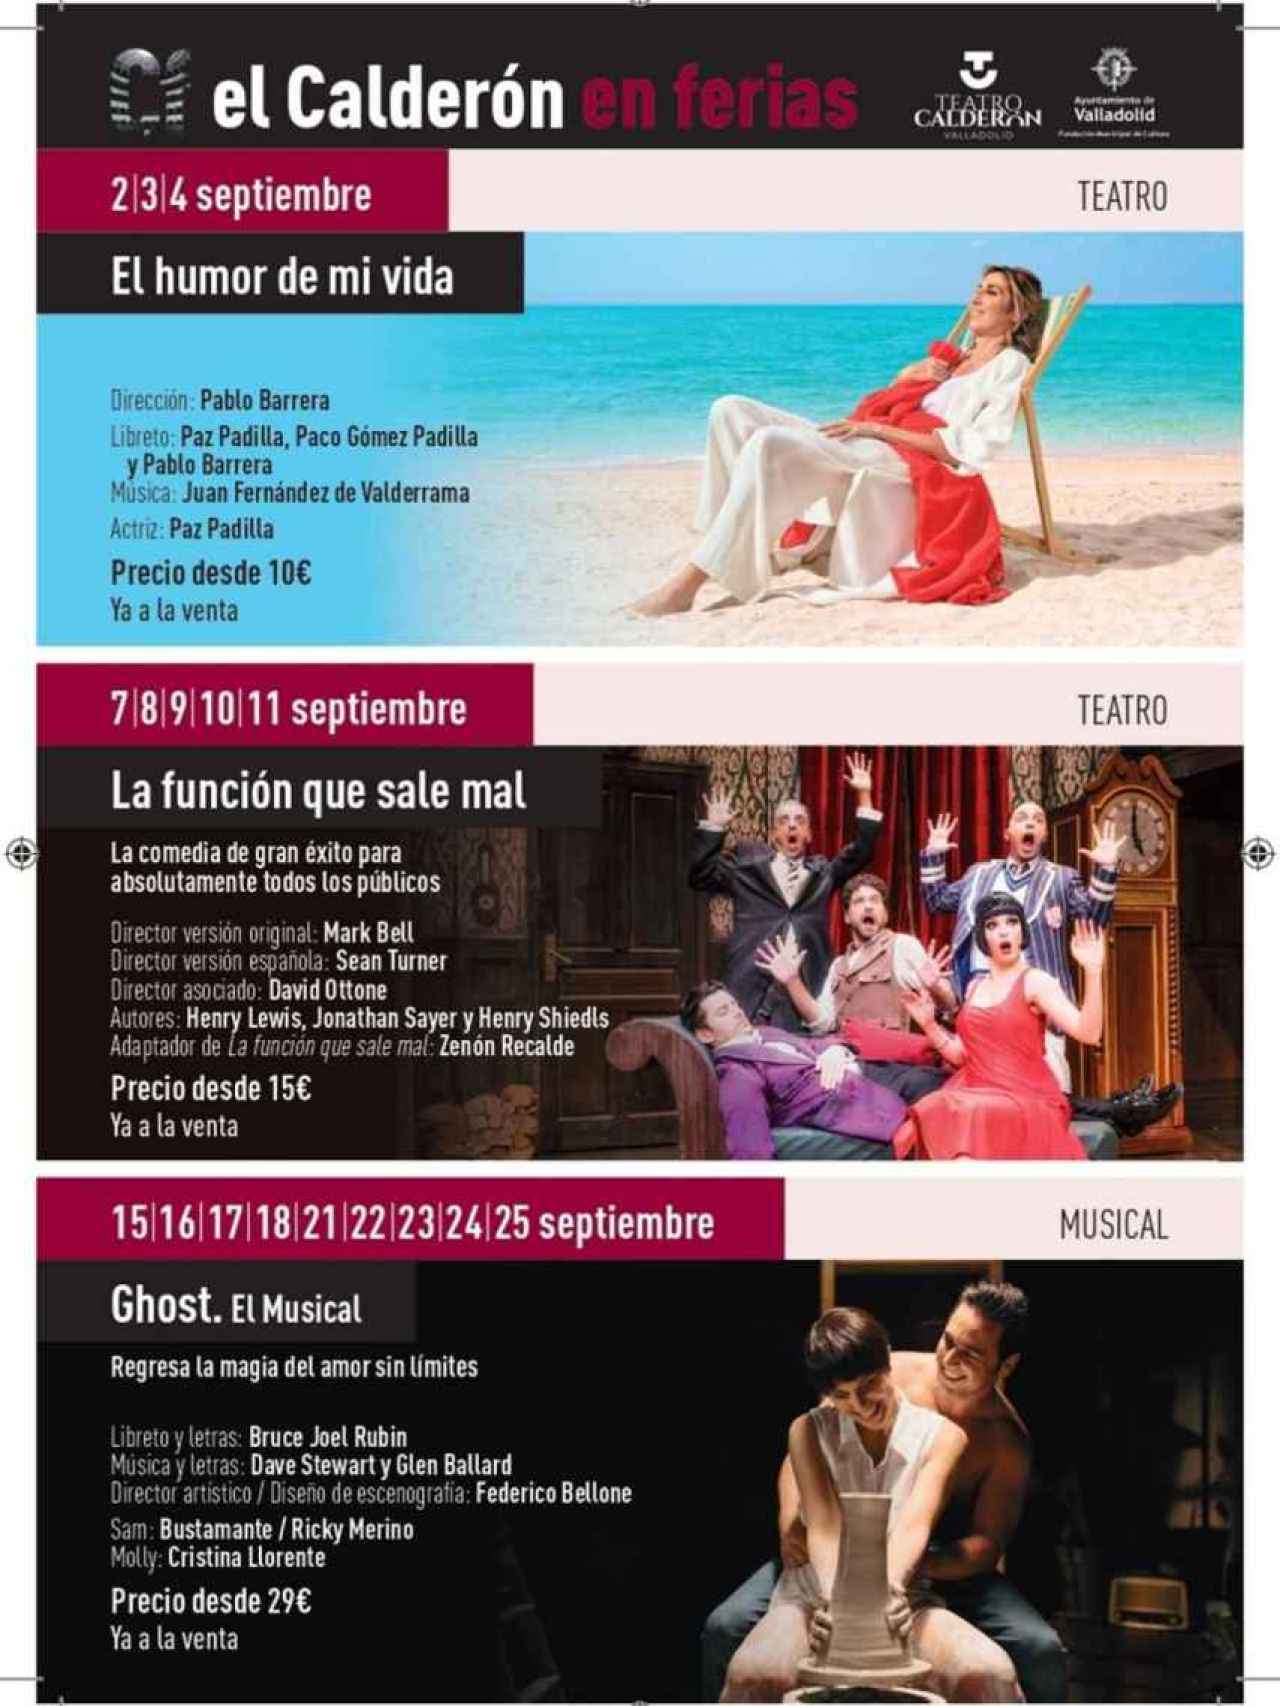 Oferta cultural del Teatro Calderón.